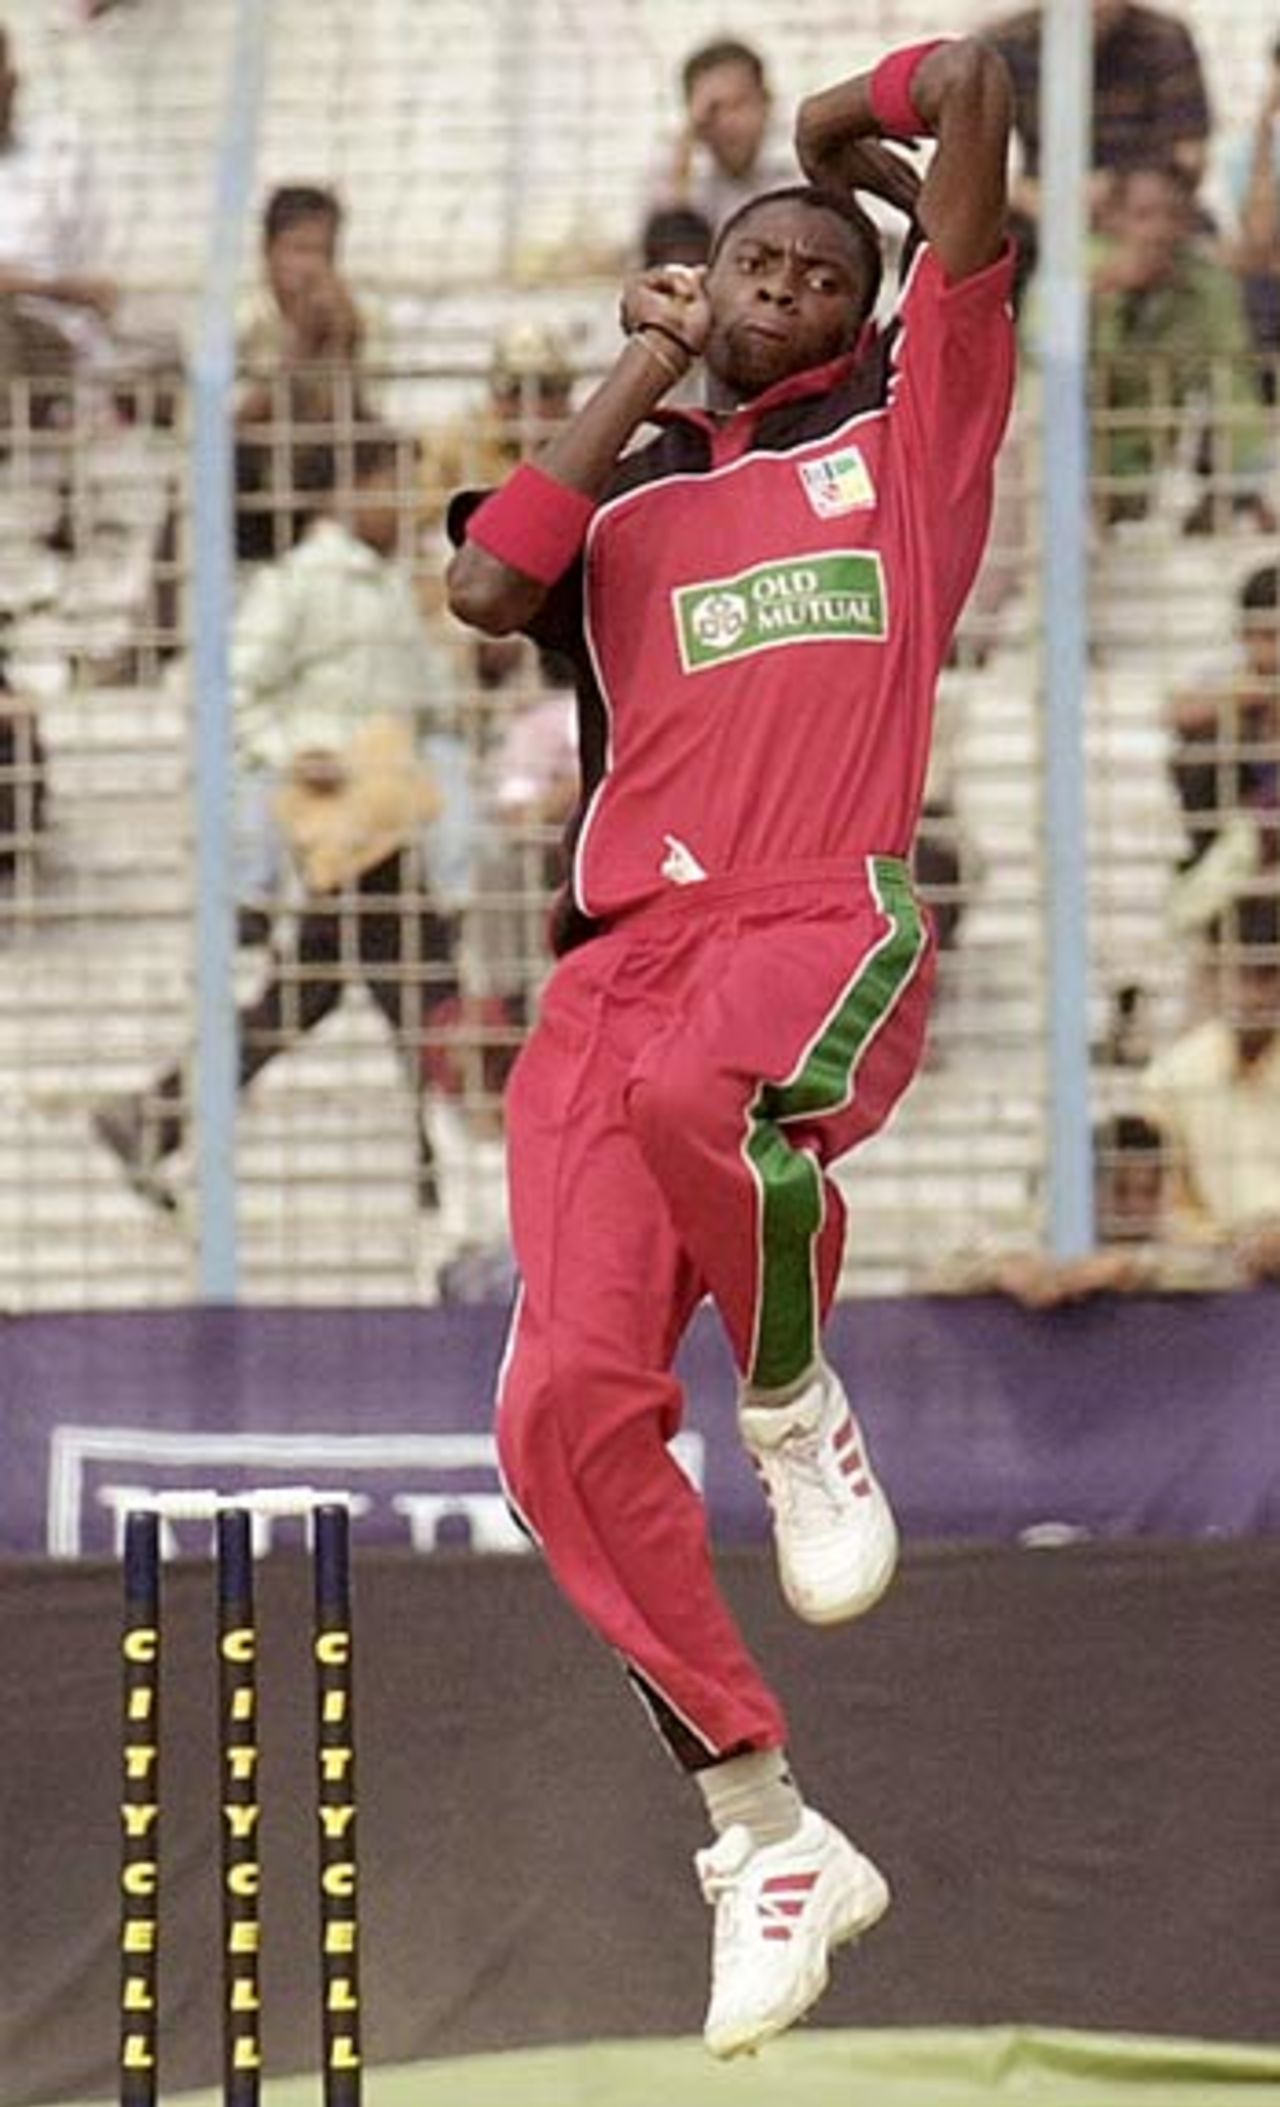 Chris Mpofu bowling, Bangladesh v Zimbabwe, Chittagong, January 24, 2005